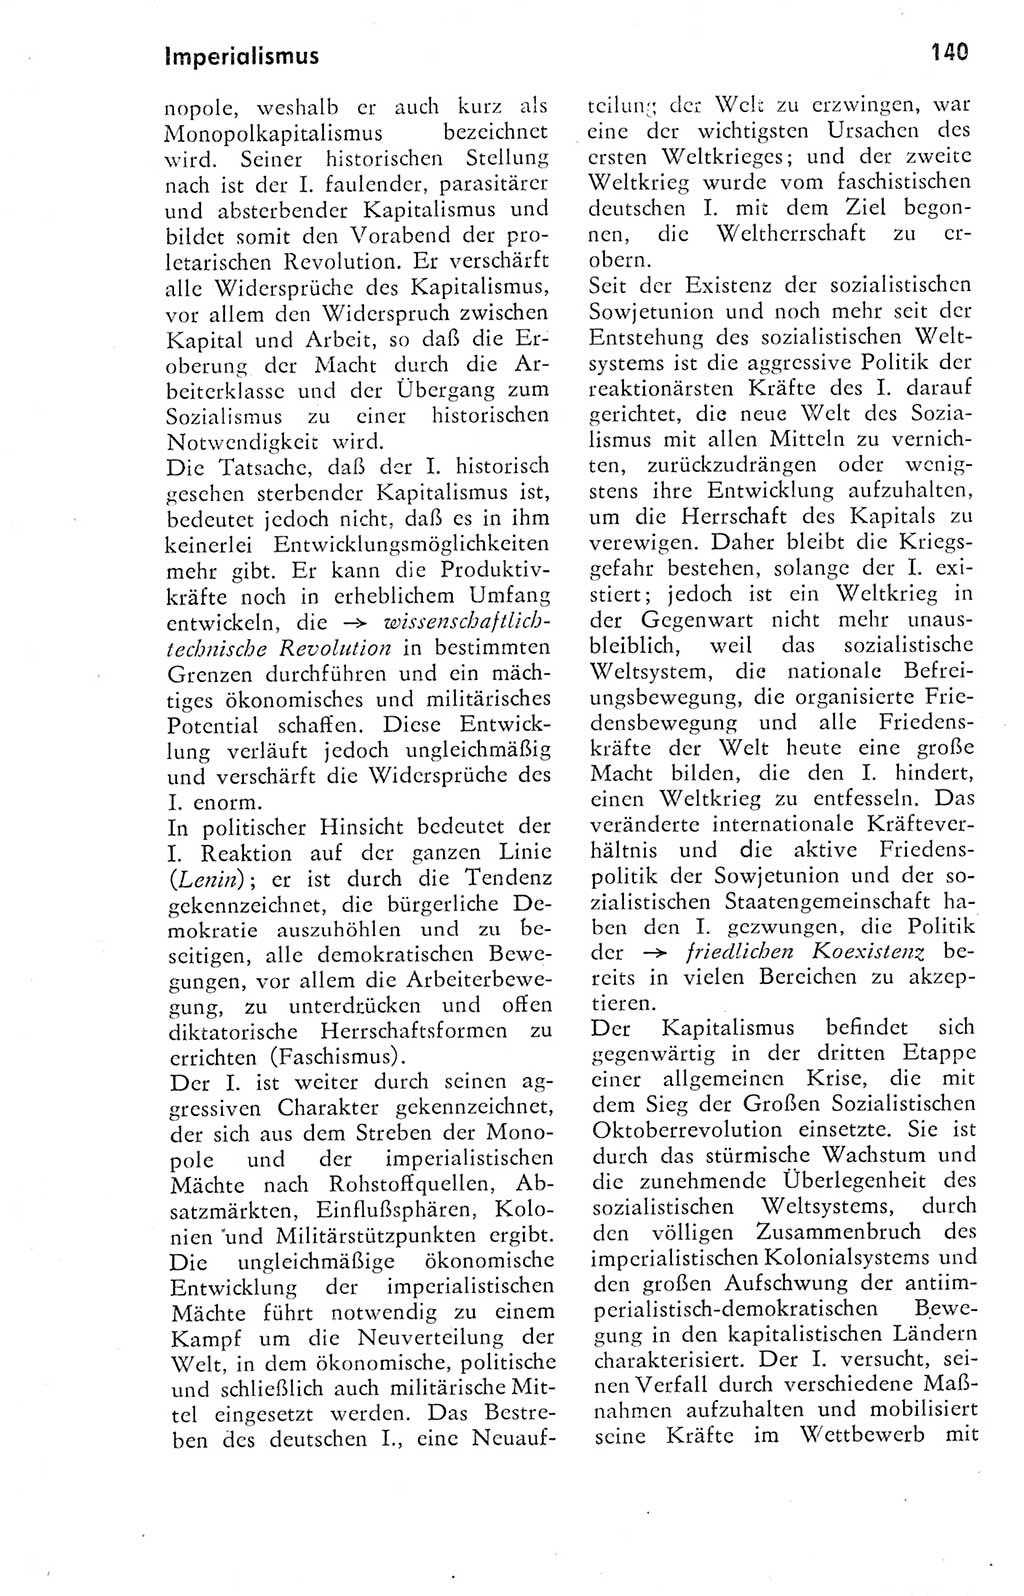 Kleines Wörterbuch der marxistisch-leninistischen Philosophie [Deutsche Demokratische Republik (DDR)] 1974, Seite 140 (Kl. Wb. ML Phil. DDR 1974, S. 140)